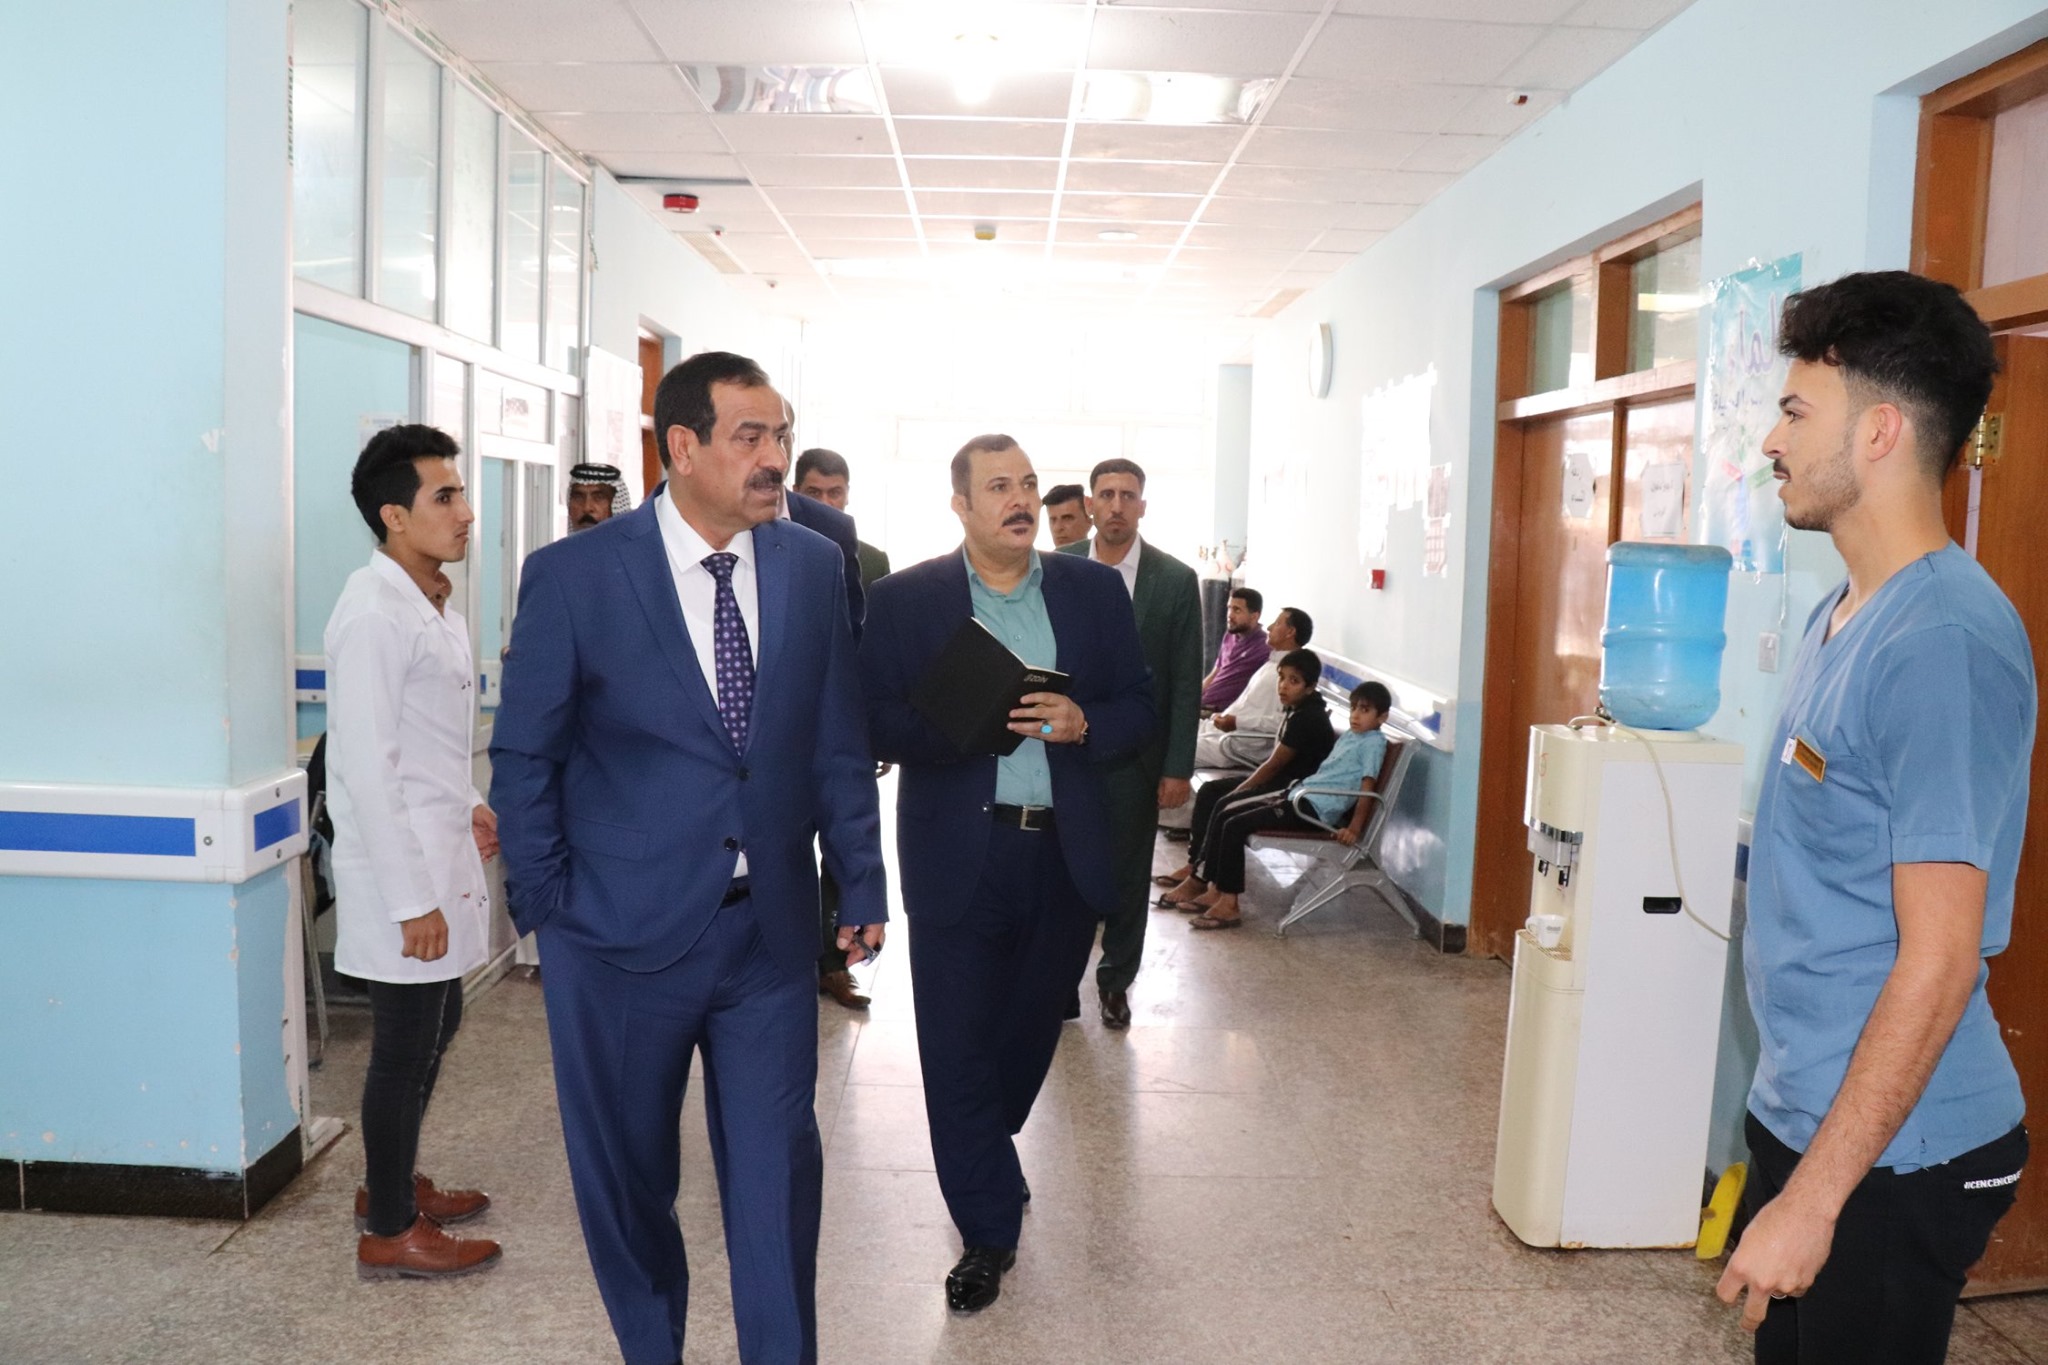 المدير العام يتفقد مستشفيات القادسية والمشخاب والمركز الصحي في سوق شعلان